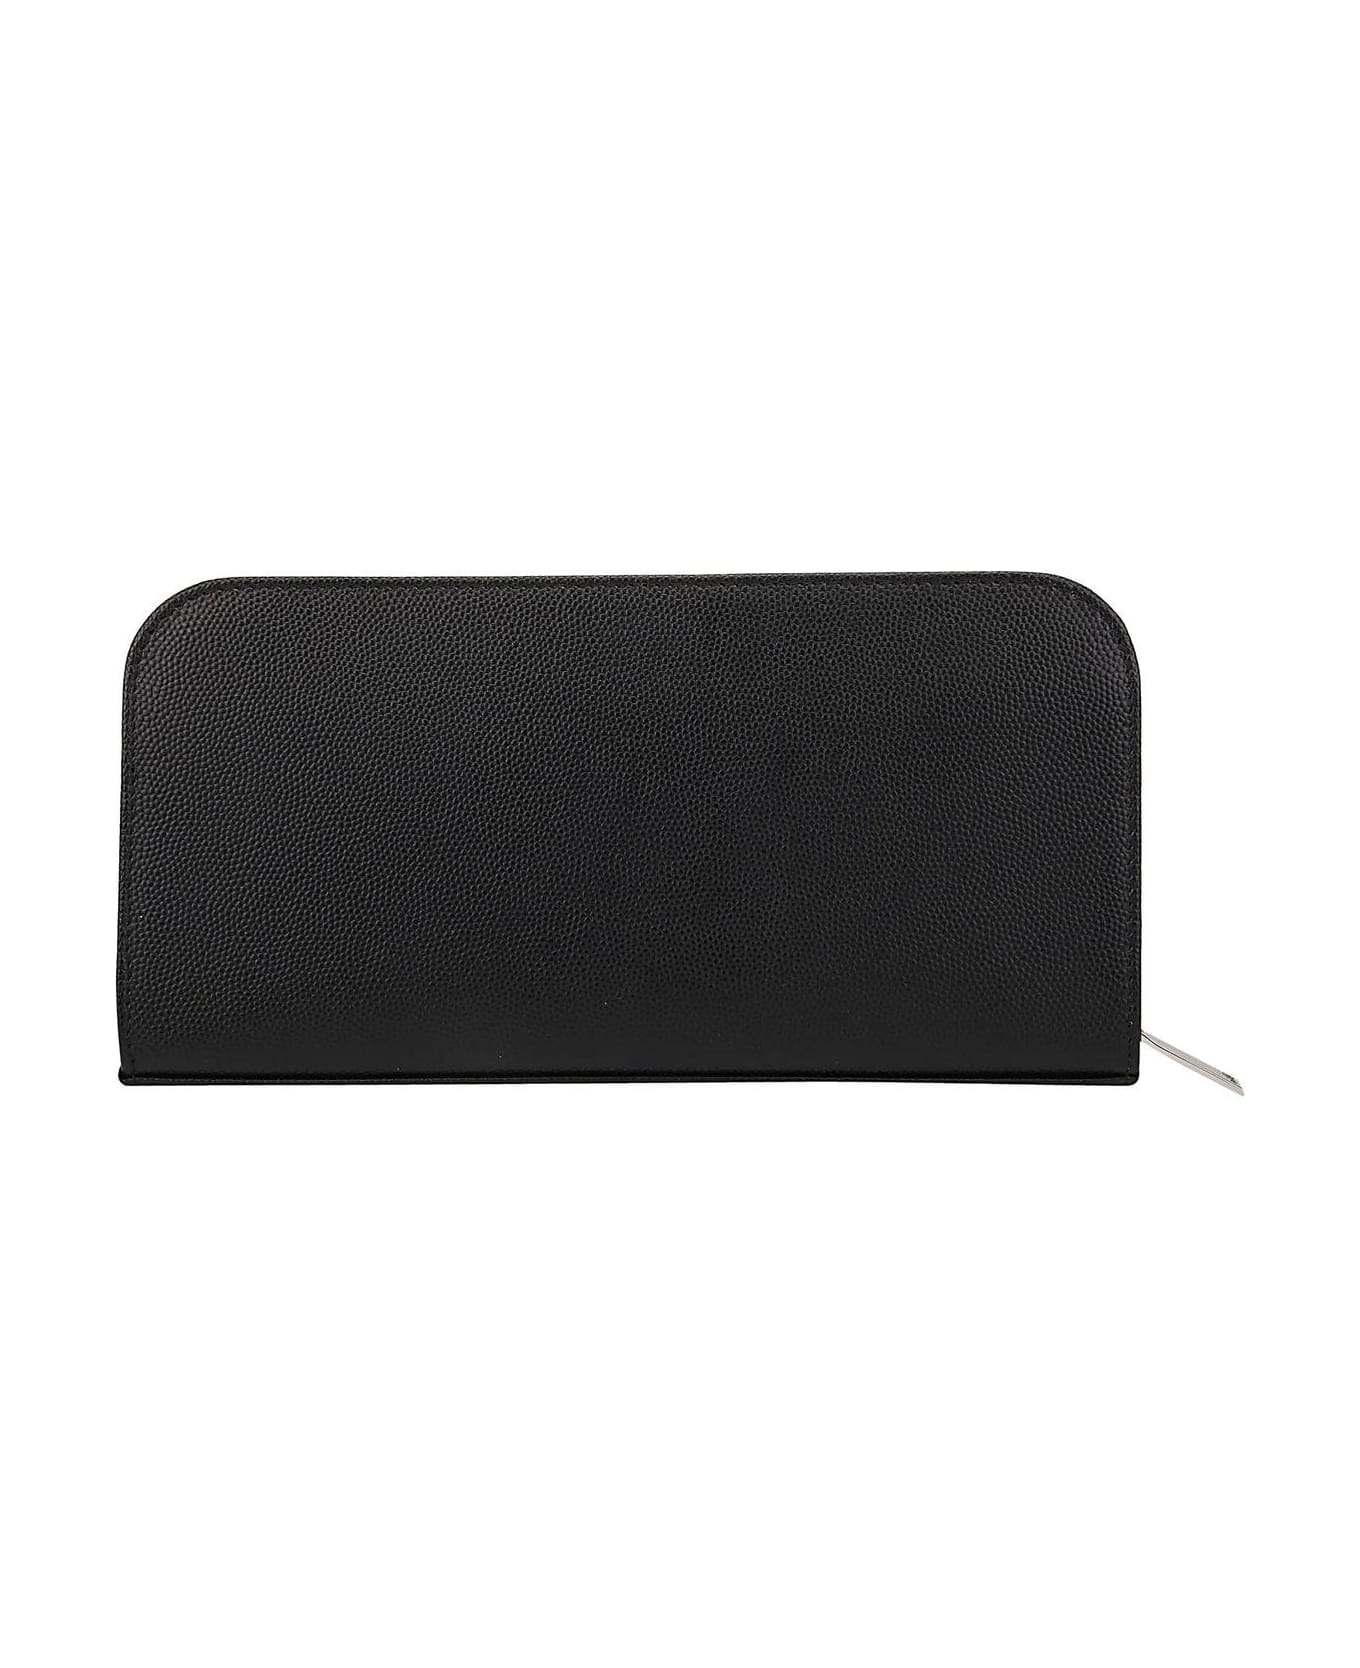 Saint Laurent Black Leather Wallet - Nero 財布